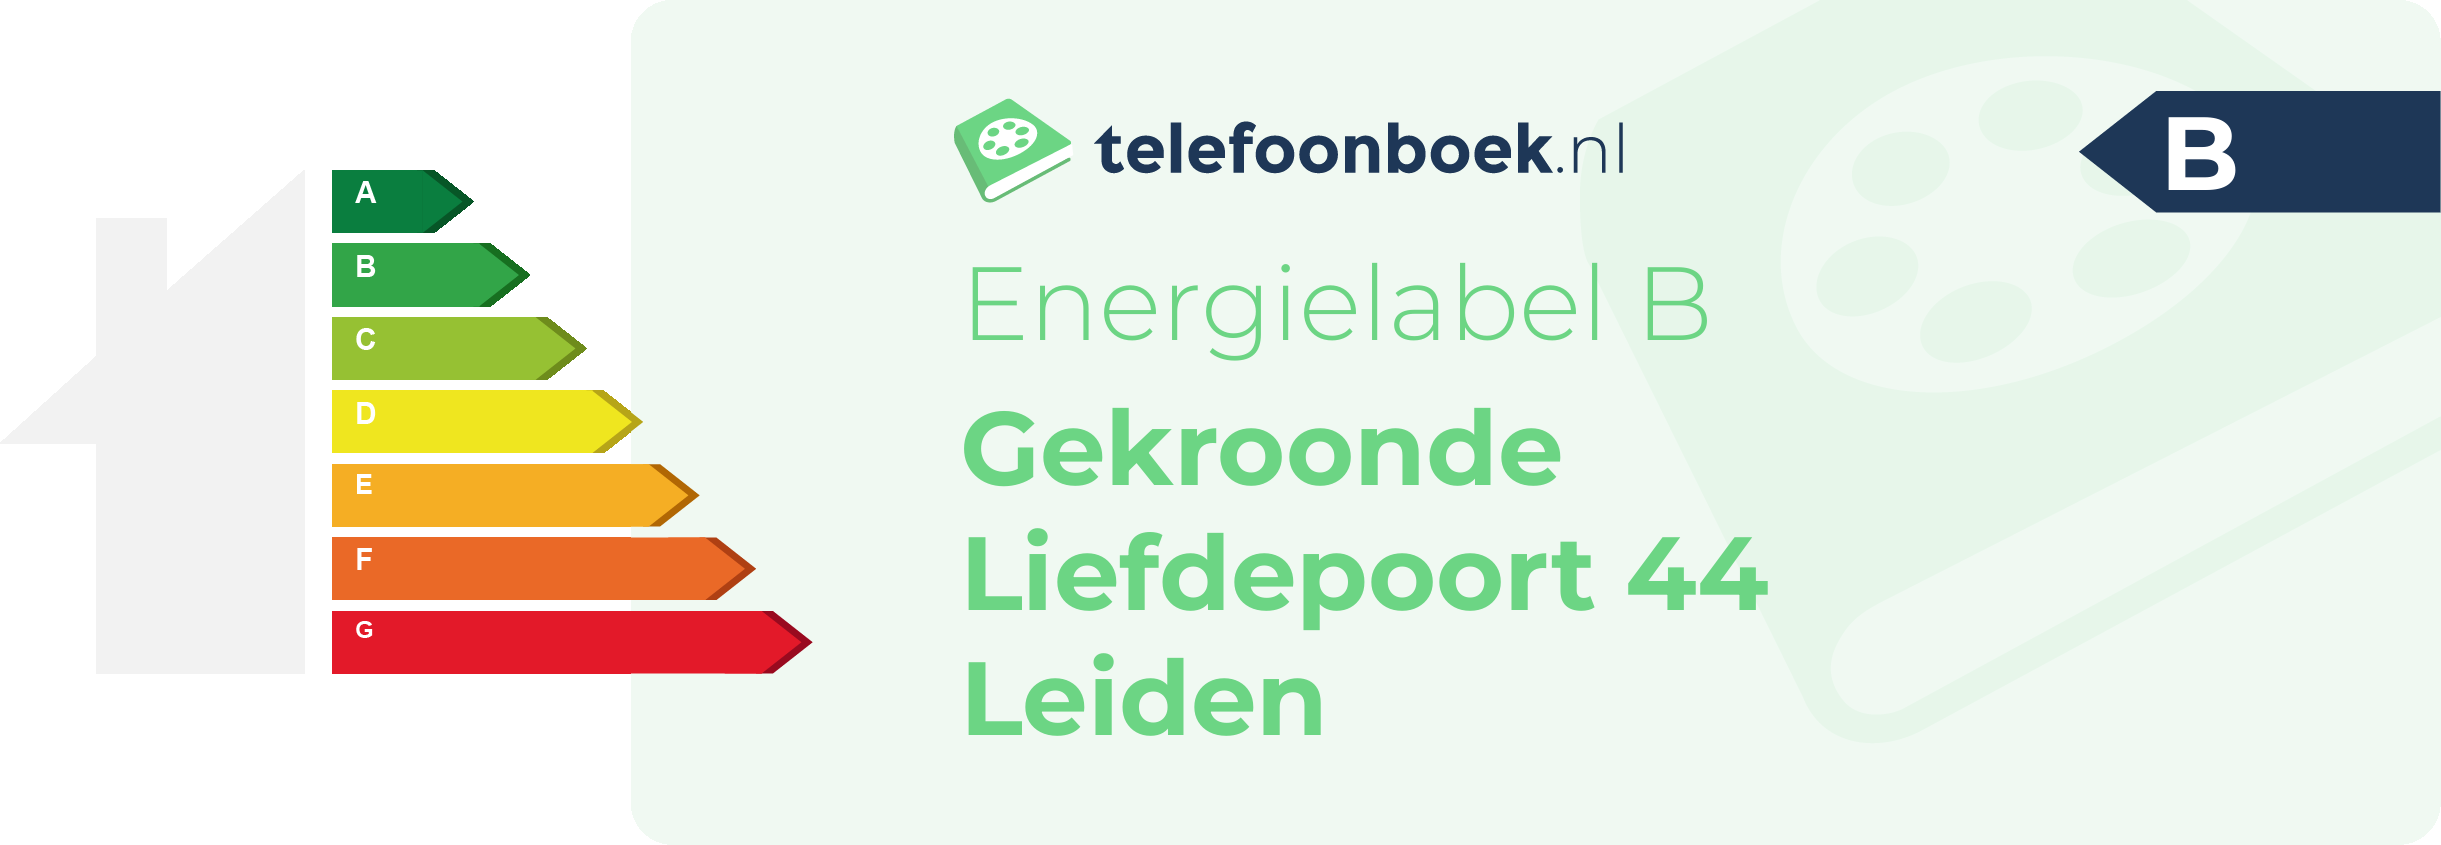 Energielabel Gekroonde Liefdepoort 44 Leiden